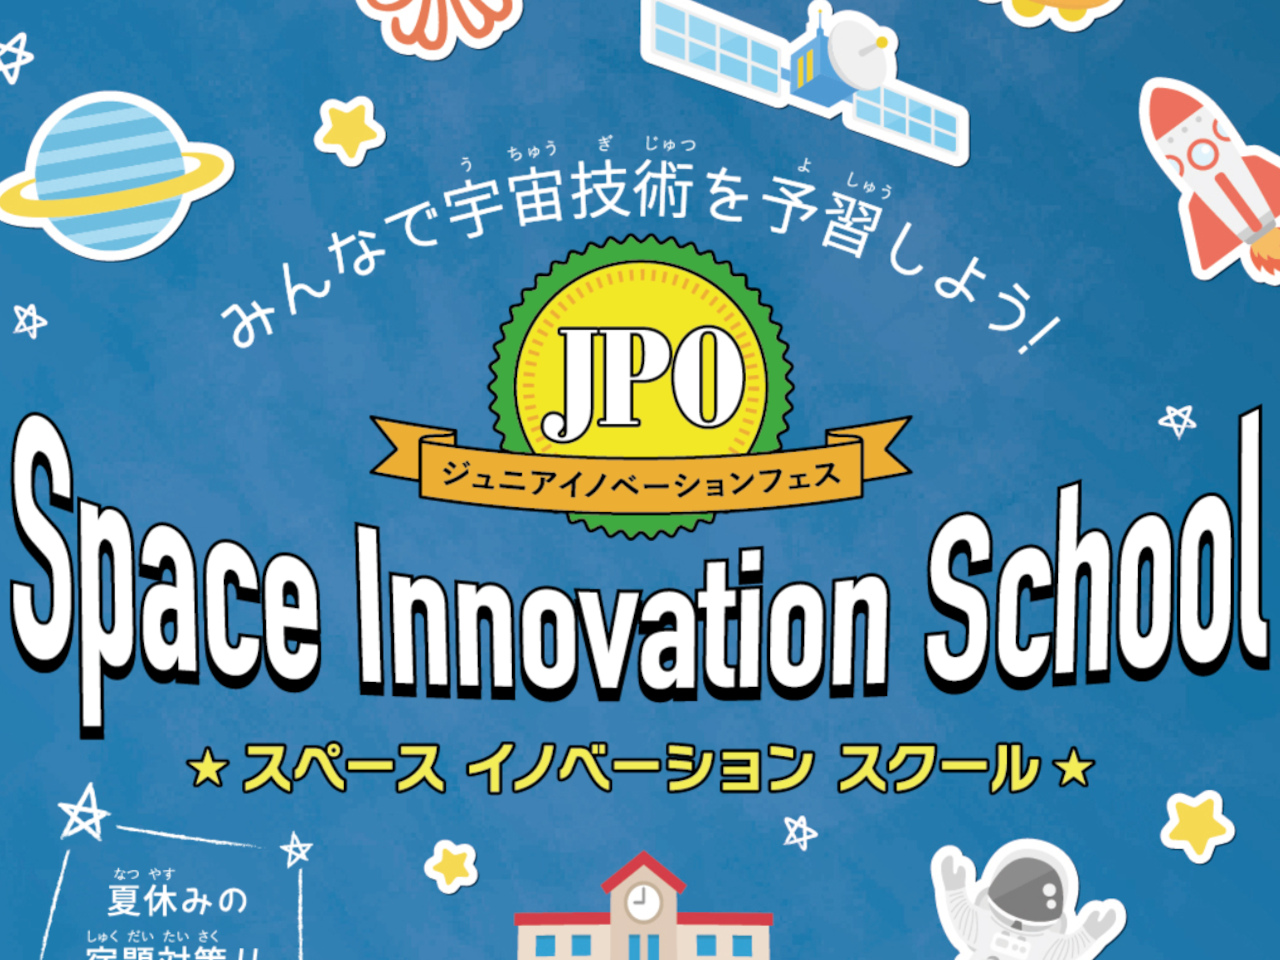 特許庁、宇宙を楽しく学べる小中学生向けイベント開催--8月に東京と大阪